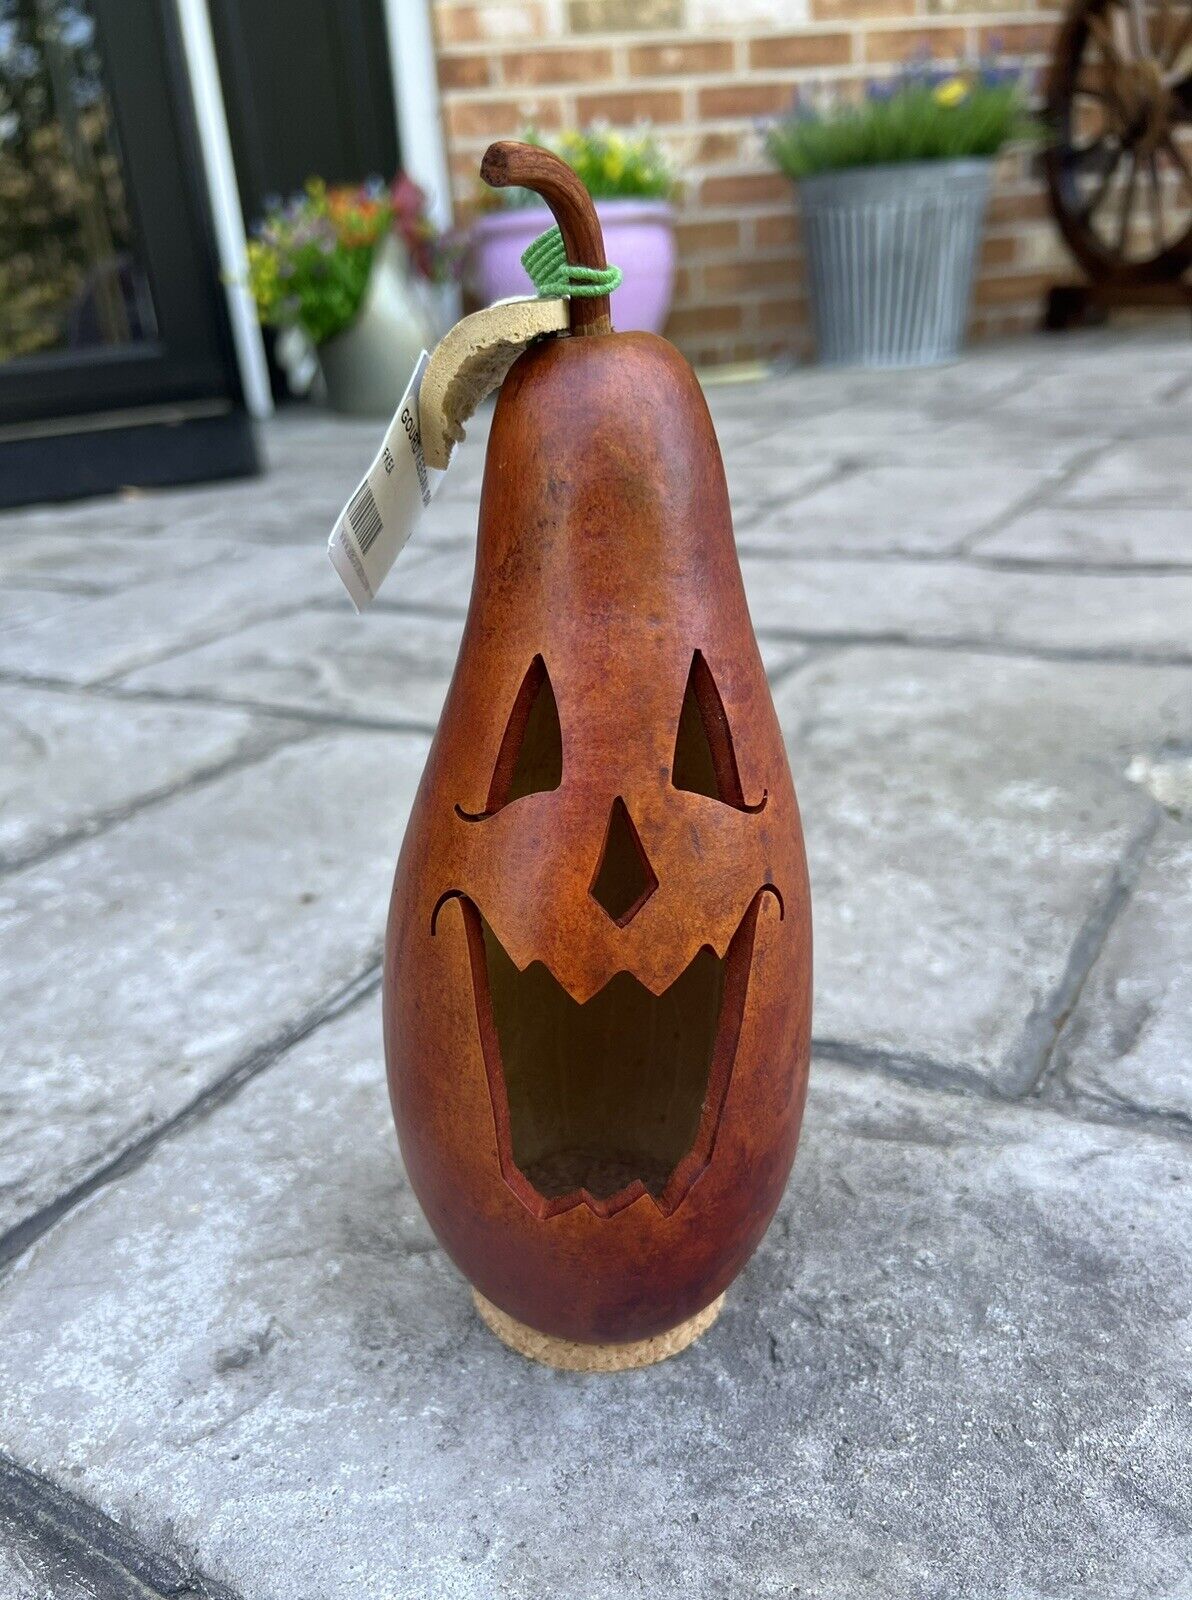 Meadowbrooke Pumpkin Gourd Keegan 9” Fall Decor Halloween